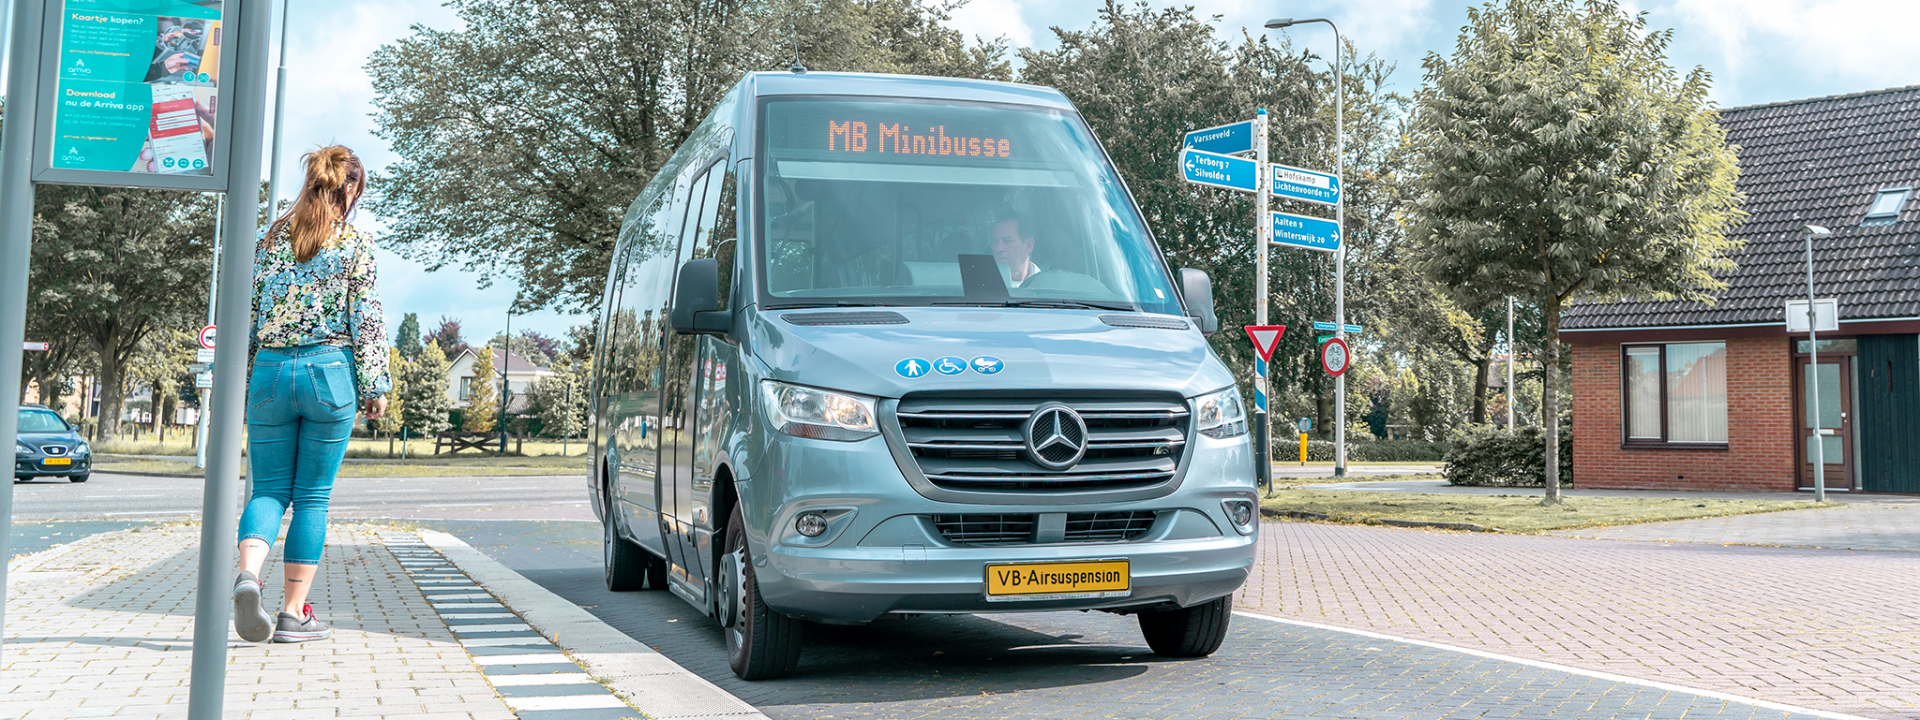 Foto: Mercedes-Benz Sprinter Minibus bij bushalte